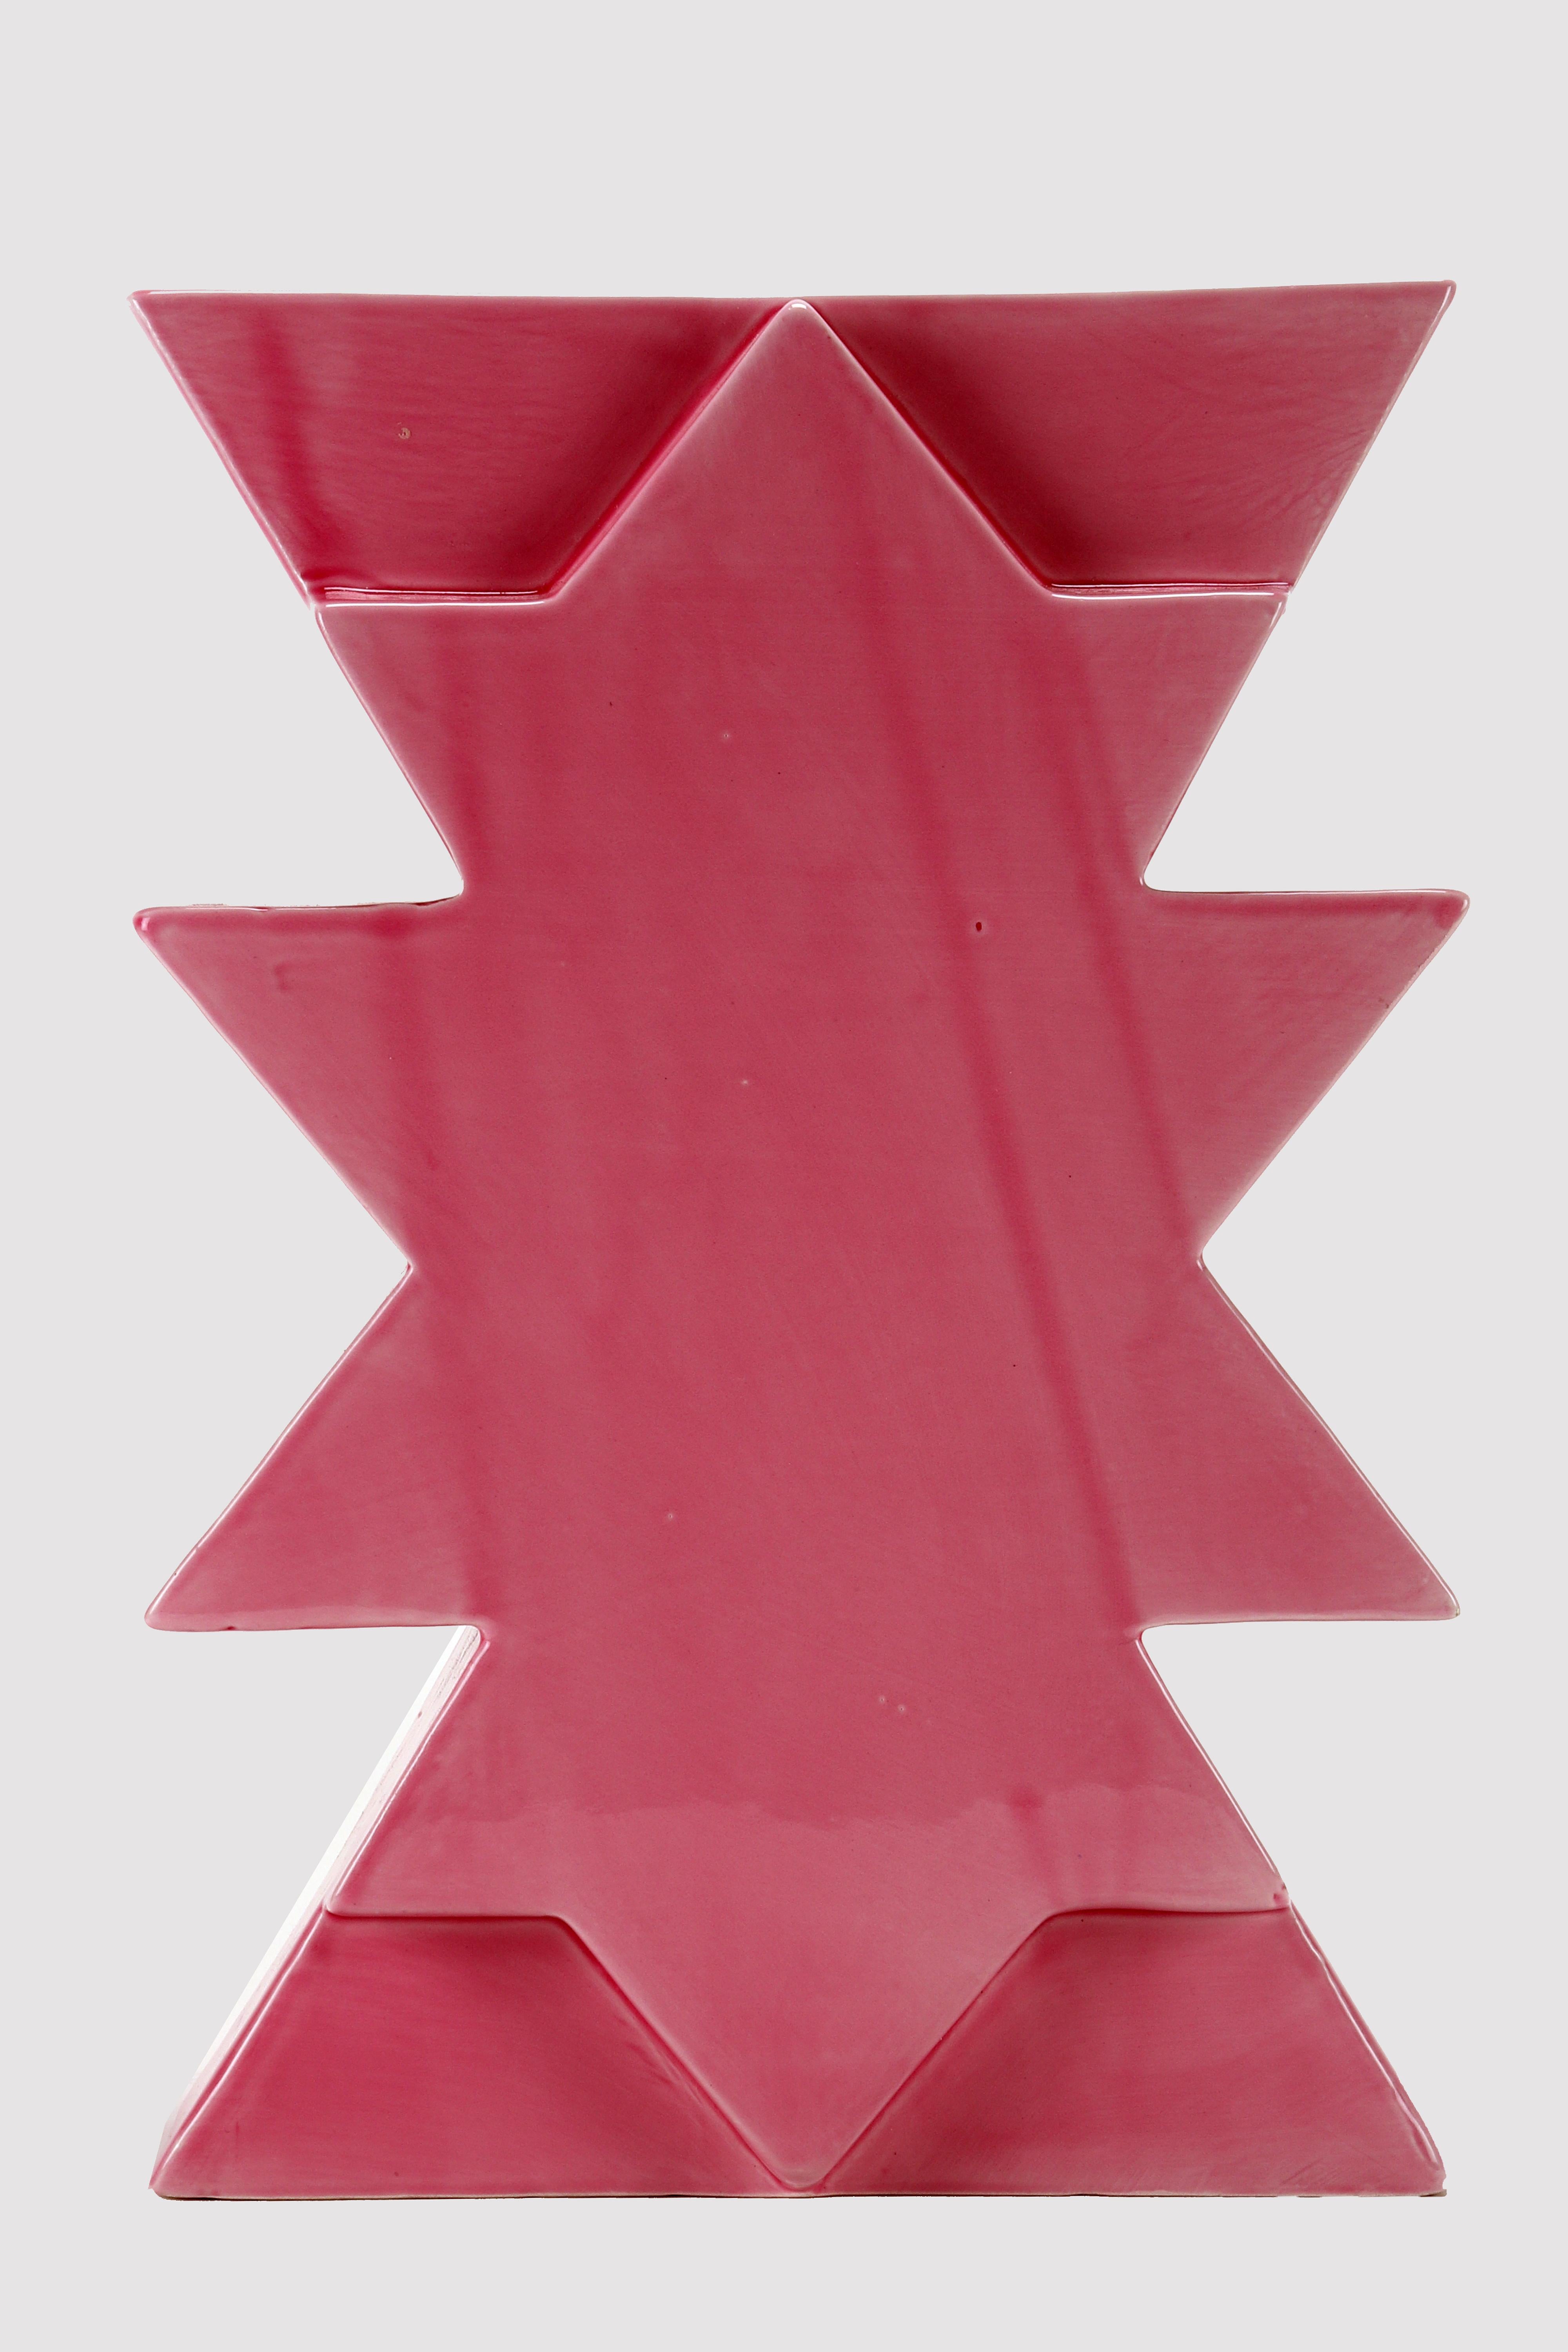 Bemalte Keramikvase Memphis Milano, Ilios von Luciano Florio Paccagnella, rosa Farbe.
Er war ein wichtiges Mitglied der Gruppe, als er seine Serie von einzigartigen handgefertigten Vasen schuf. Florio Paccagnella studierte Werbegrafik am Liceo